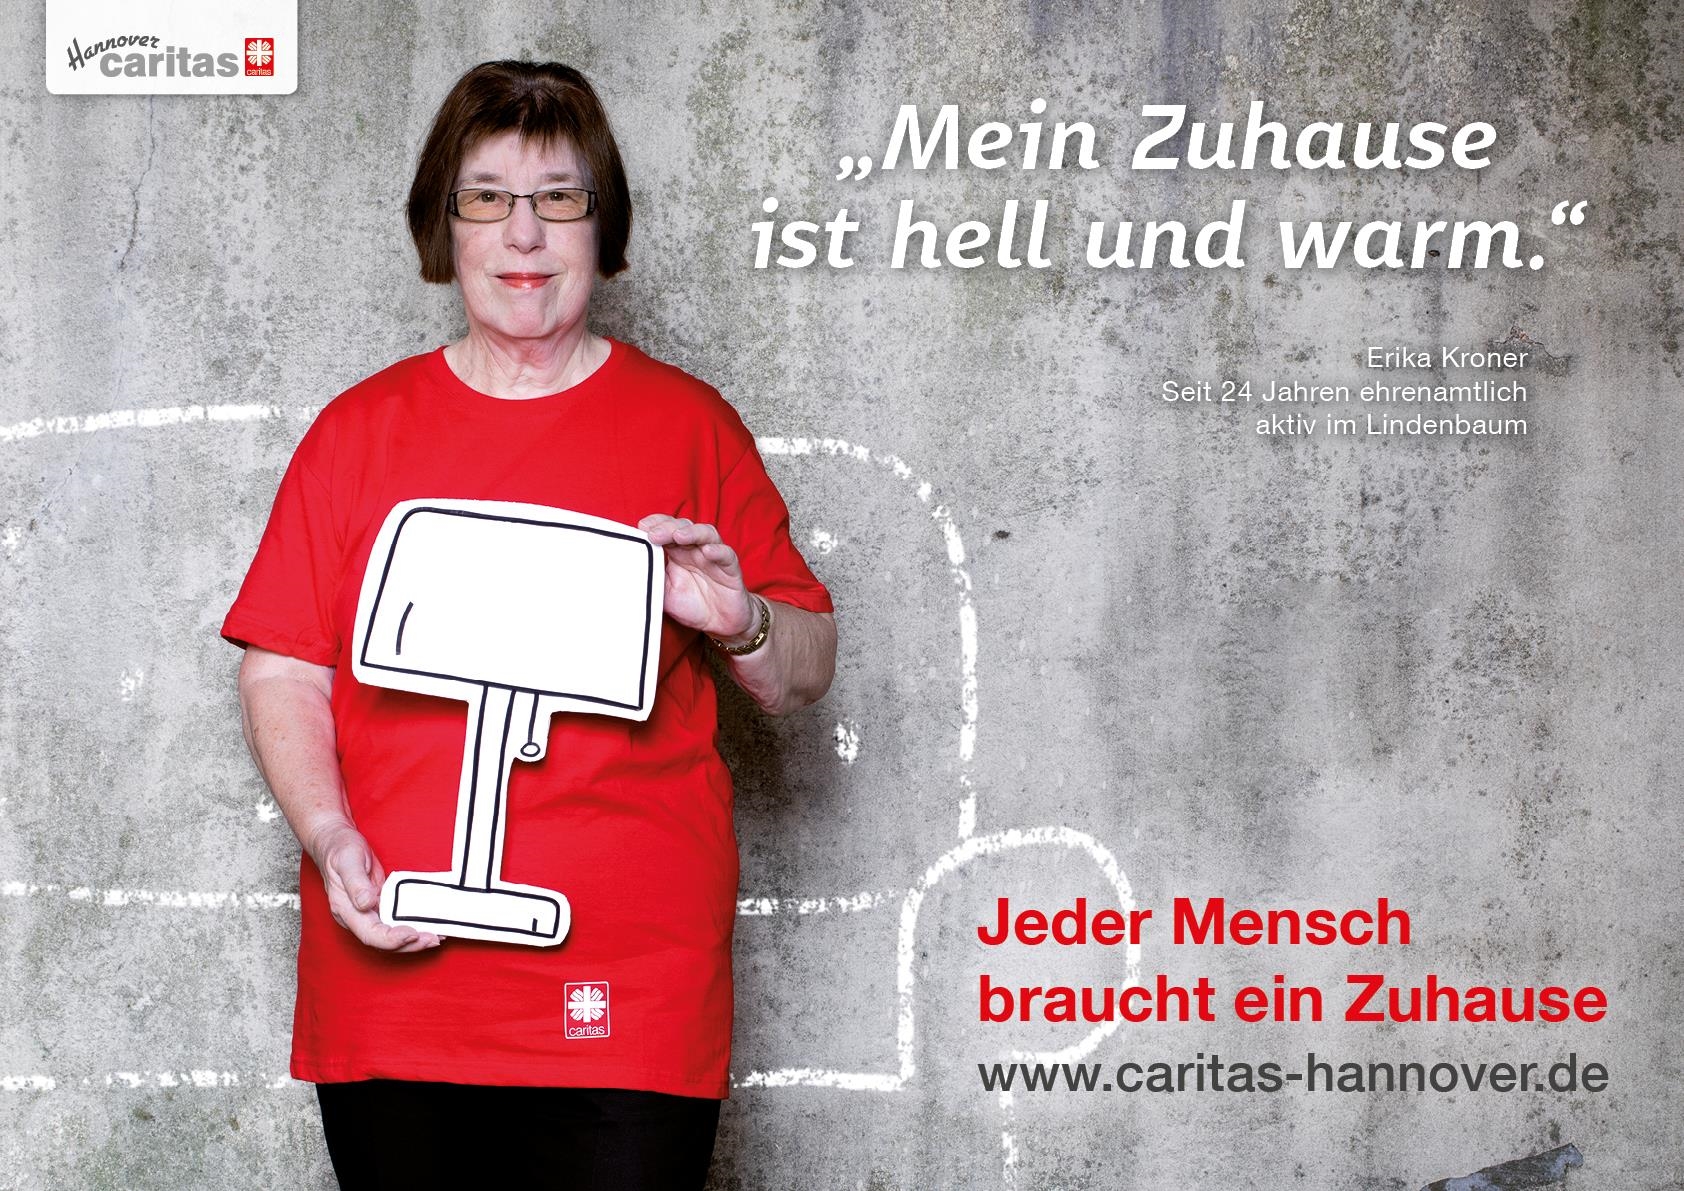 Zuhause für Jeden - - 011 - Caritas Hannover gegen Wohnungsnot Jahreskampagne (19) (Andrea Seifert)